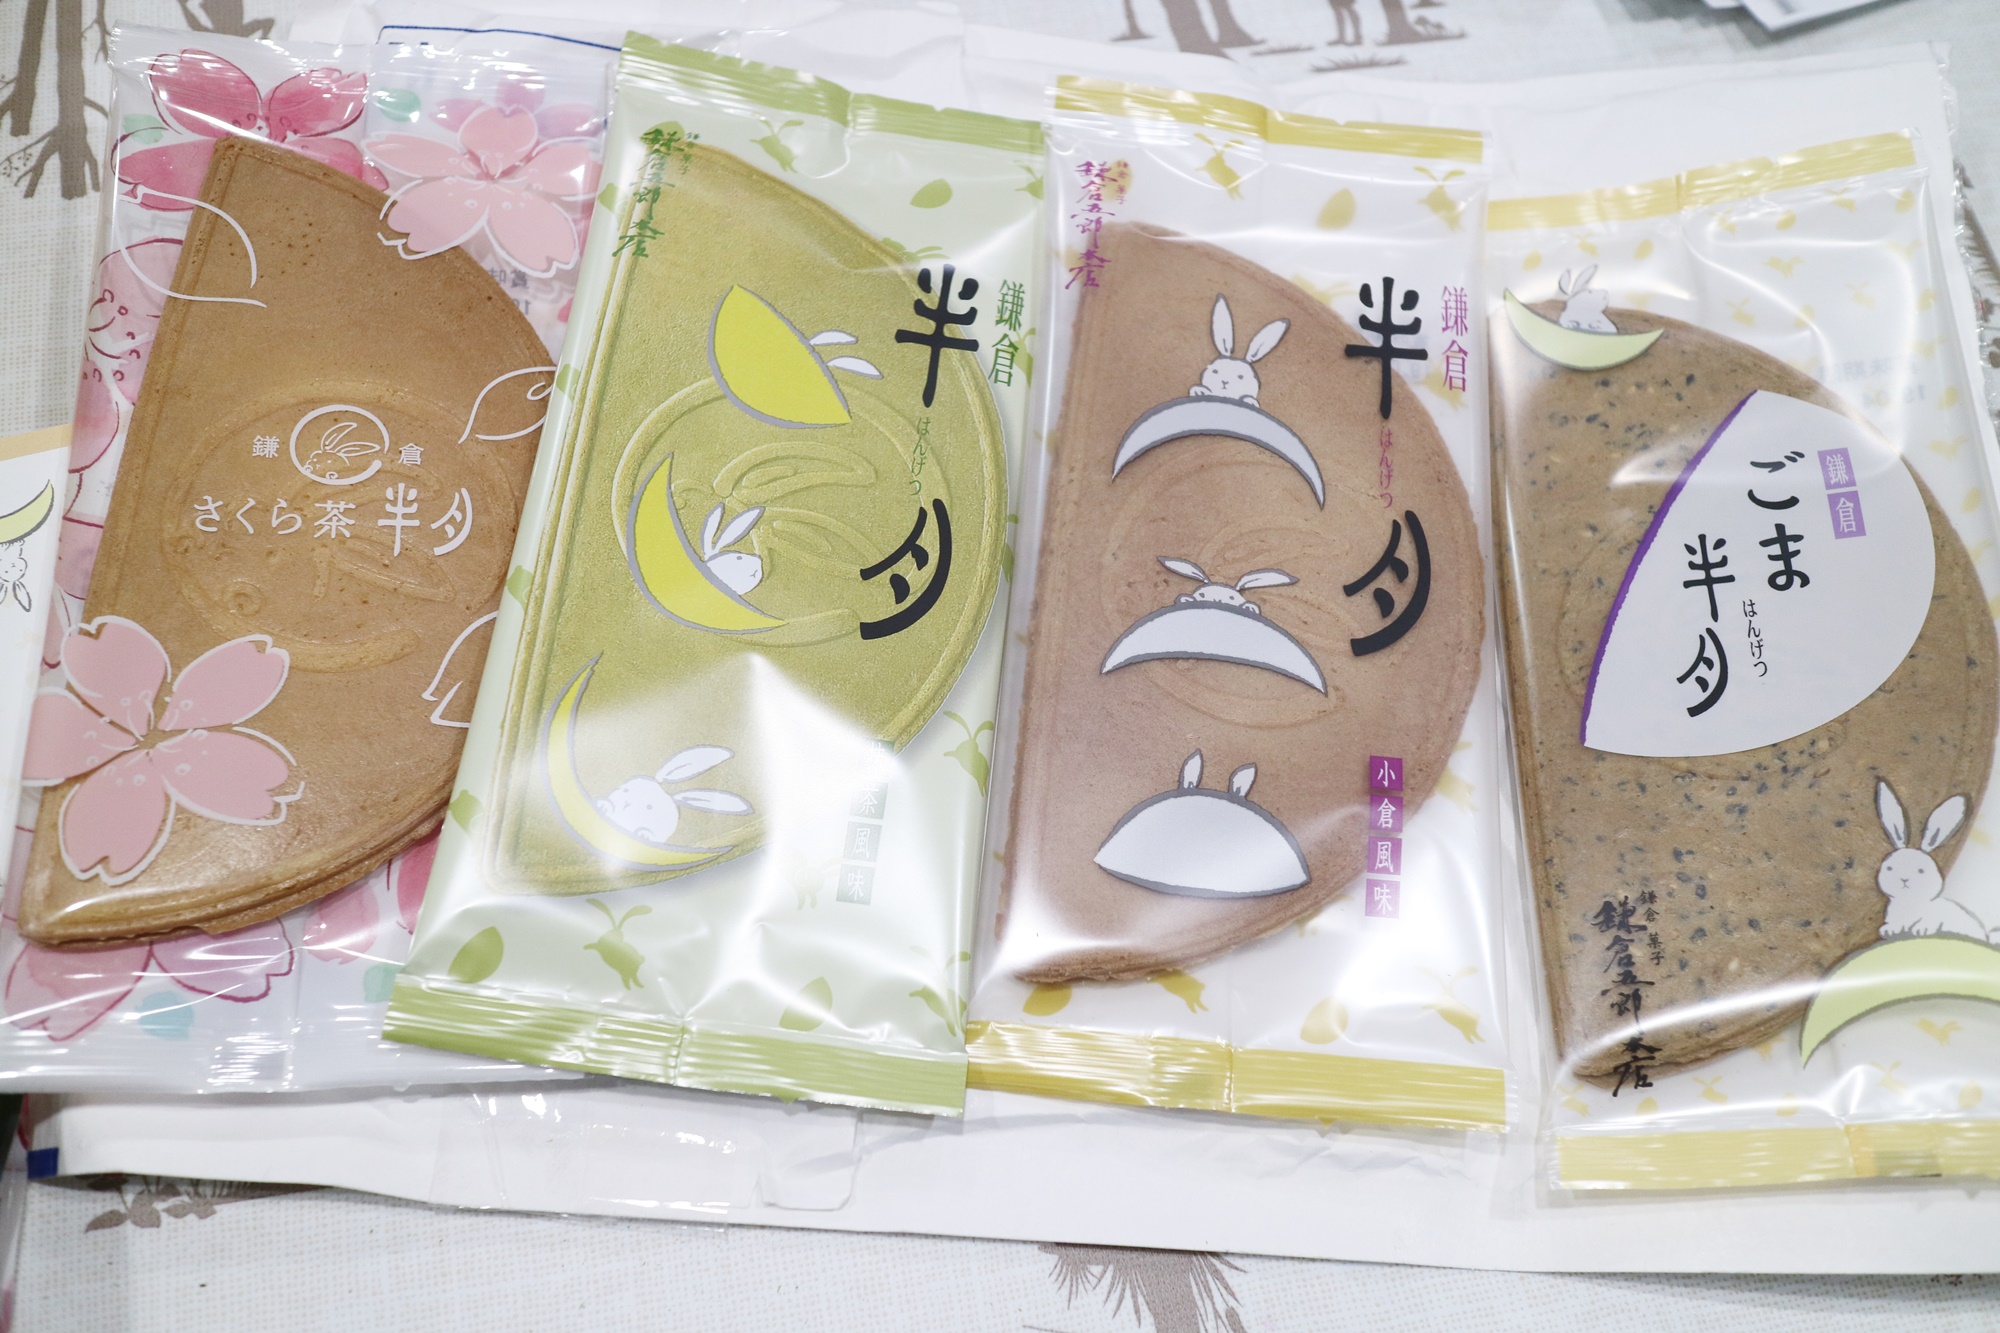 日本必買伴手禮介紹 鎌倉 半月 人氣薄餅夾心推出了櫻花期間限定口味 Japaholic